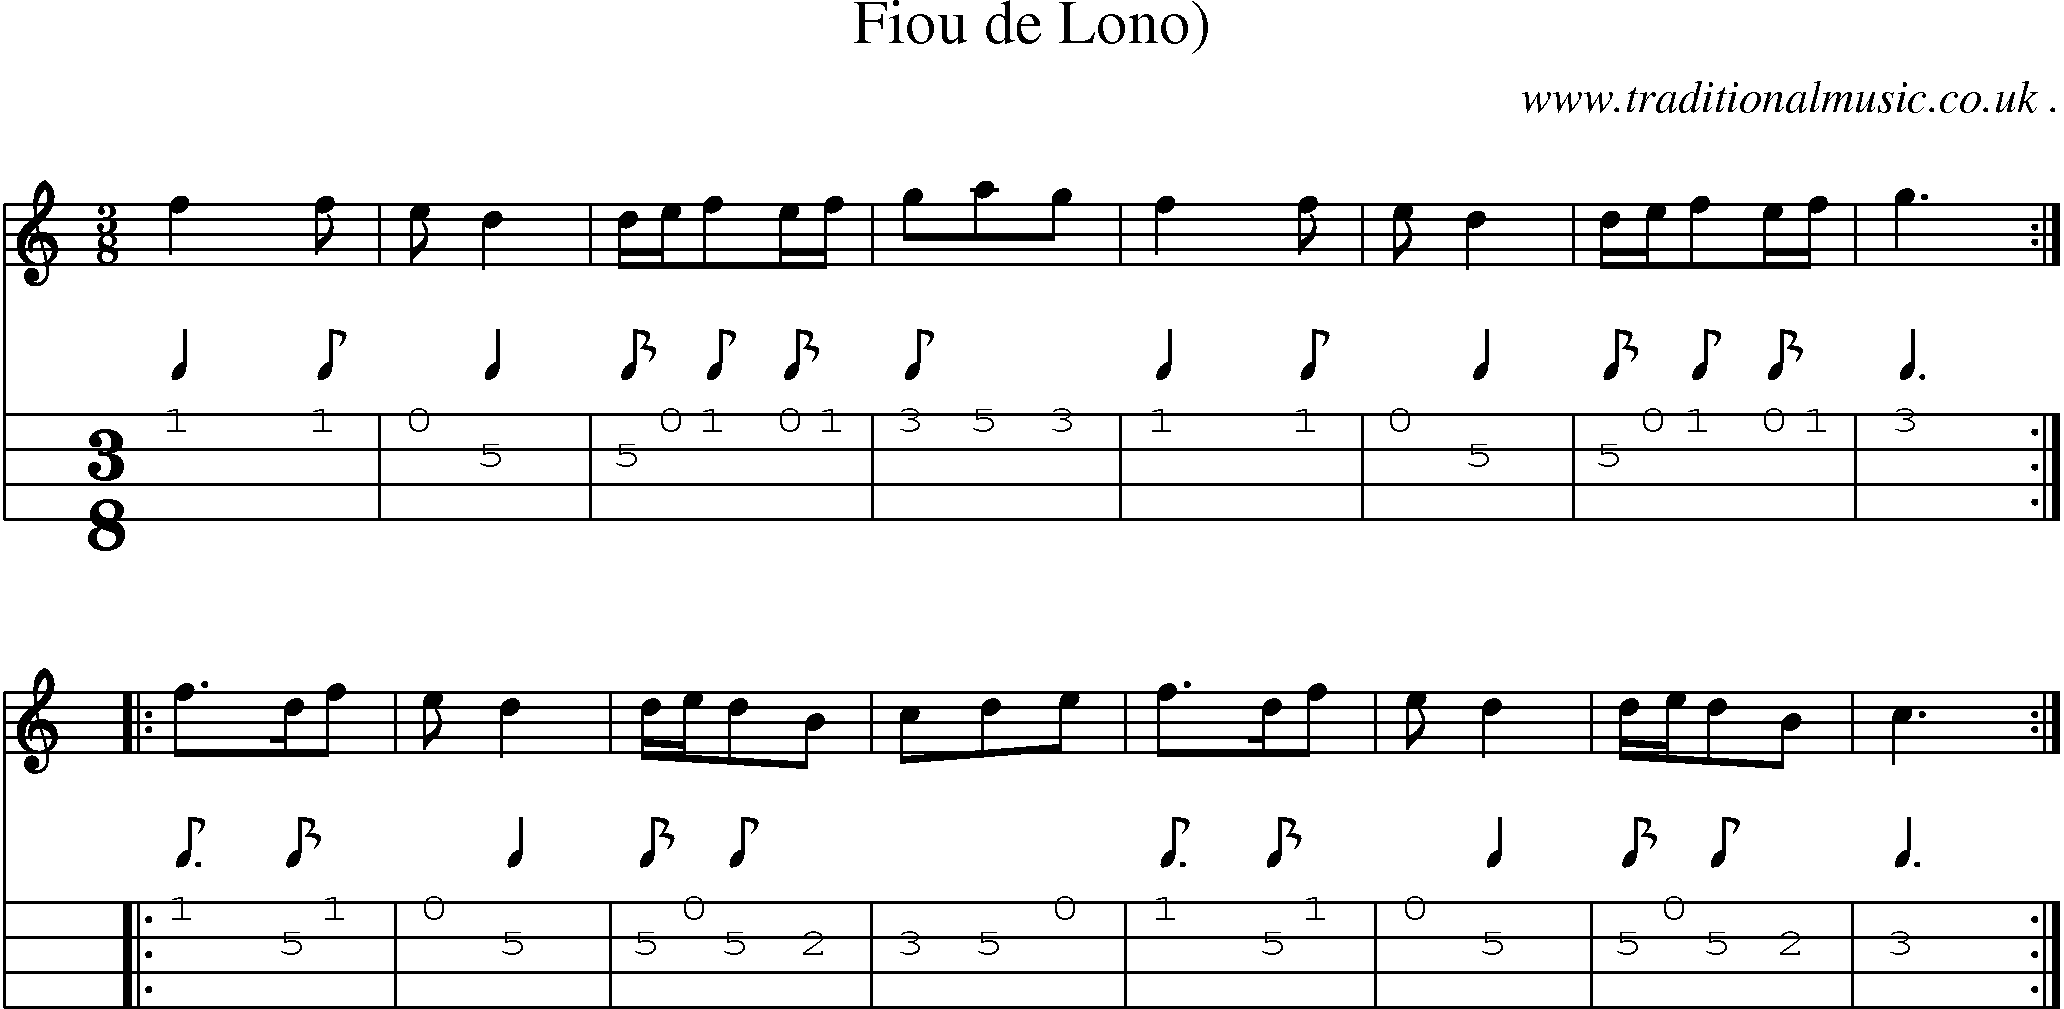 Sheet-Music and Mandolin Tabs for Fiou De Lono)